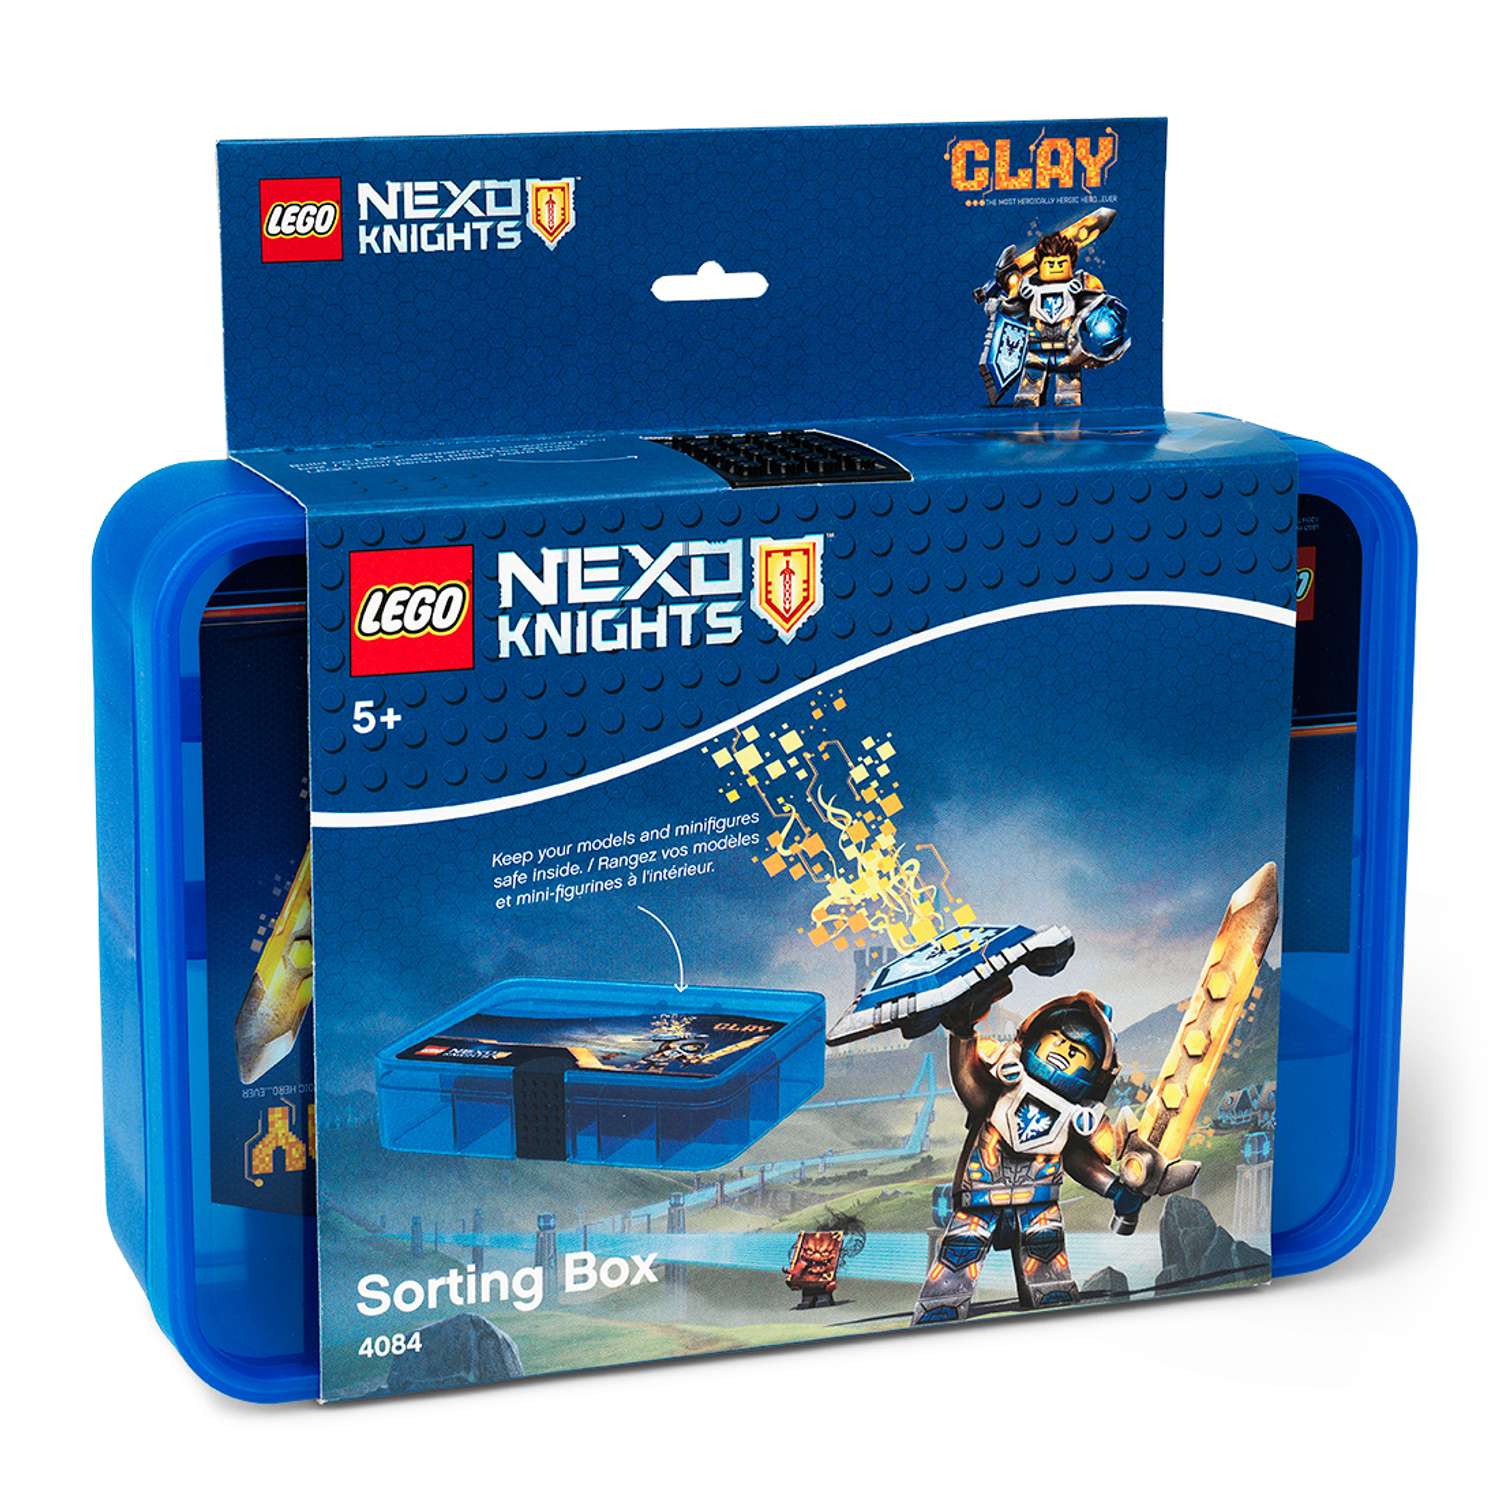 Система хранения LEGO Nexo Knights - фото 2